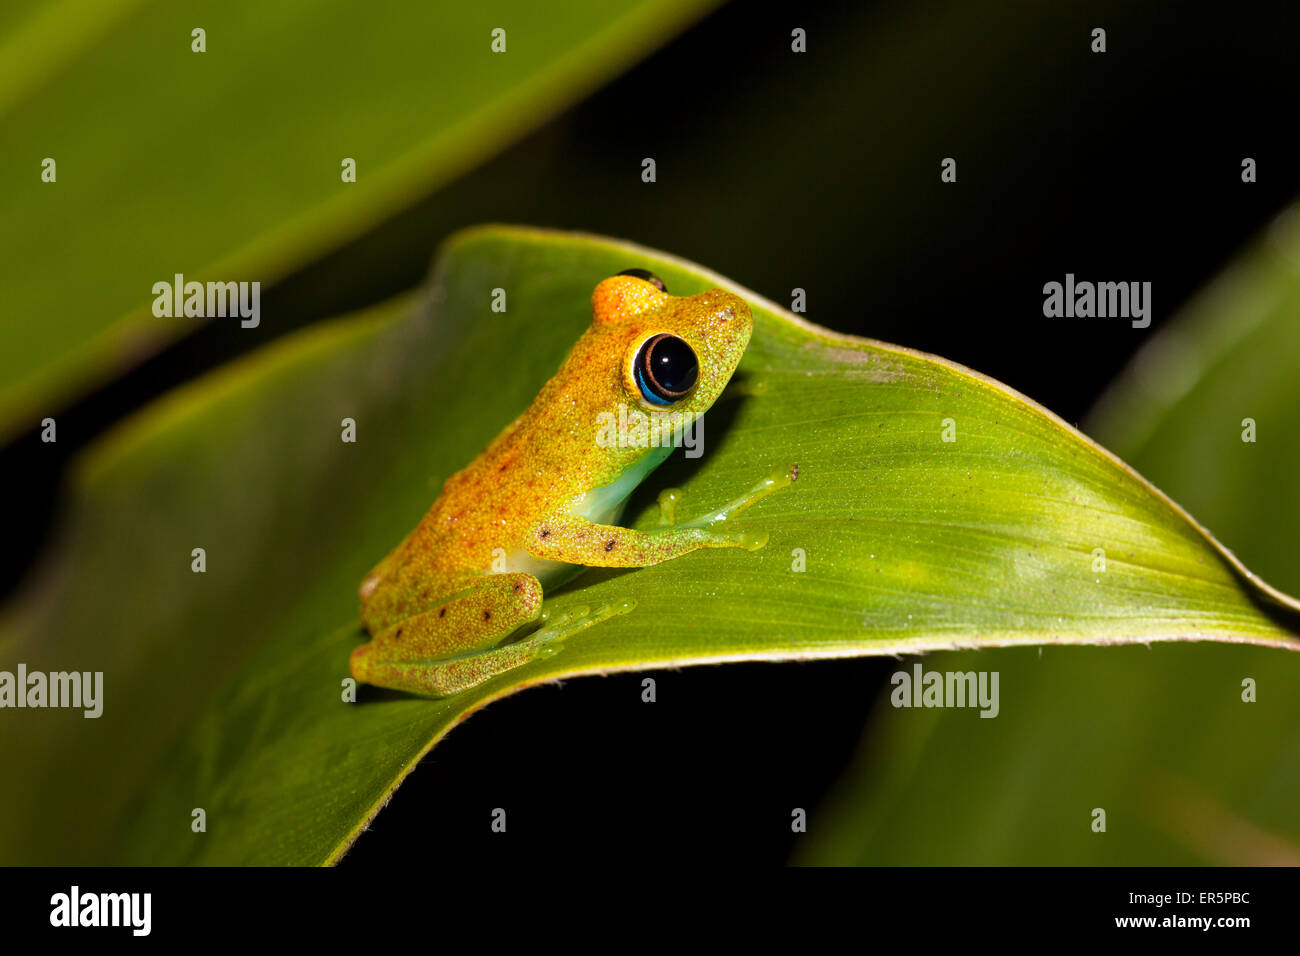 Con los ojos brillantes, la rana verde en la selva de Madagascar, Boophis viridis, Parque Nacional de Andasibe Mantadia, al este de Madagascar, Madag Foto de stock